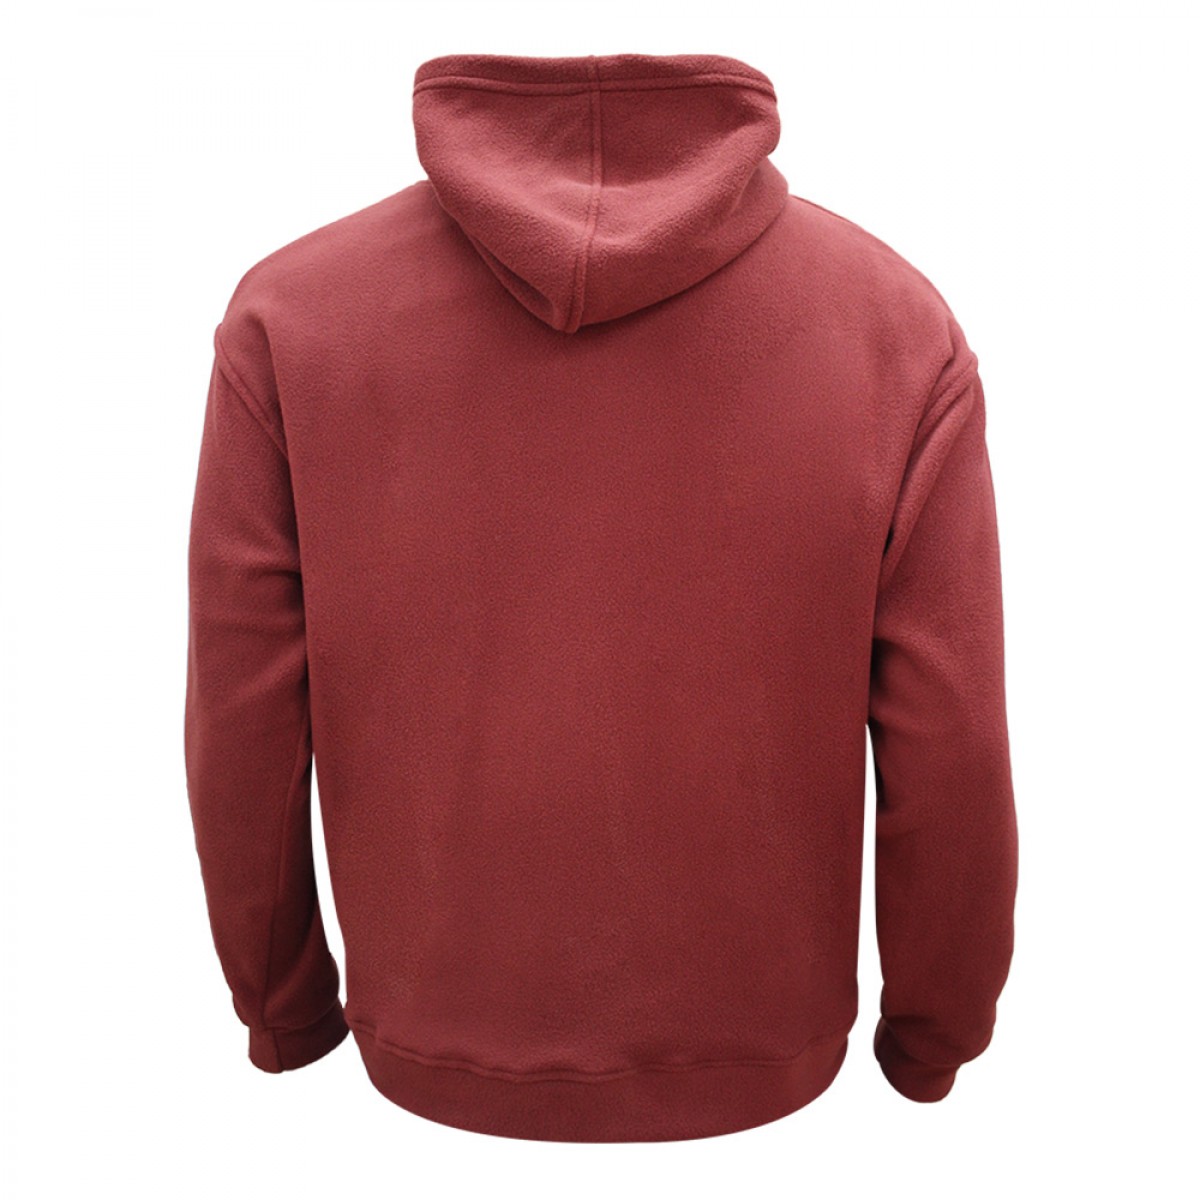 mens-fleece-hoodie-jacket-kfh95714-11a